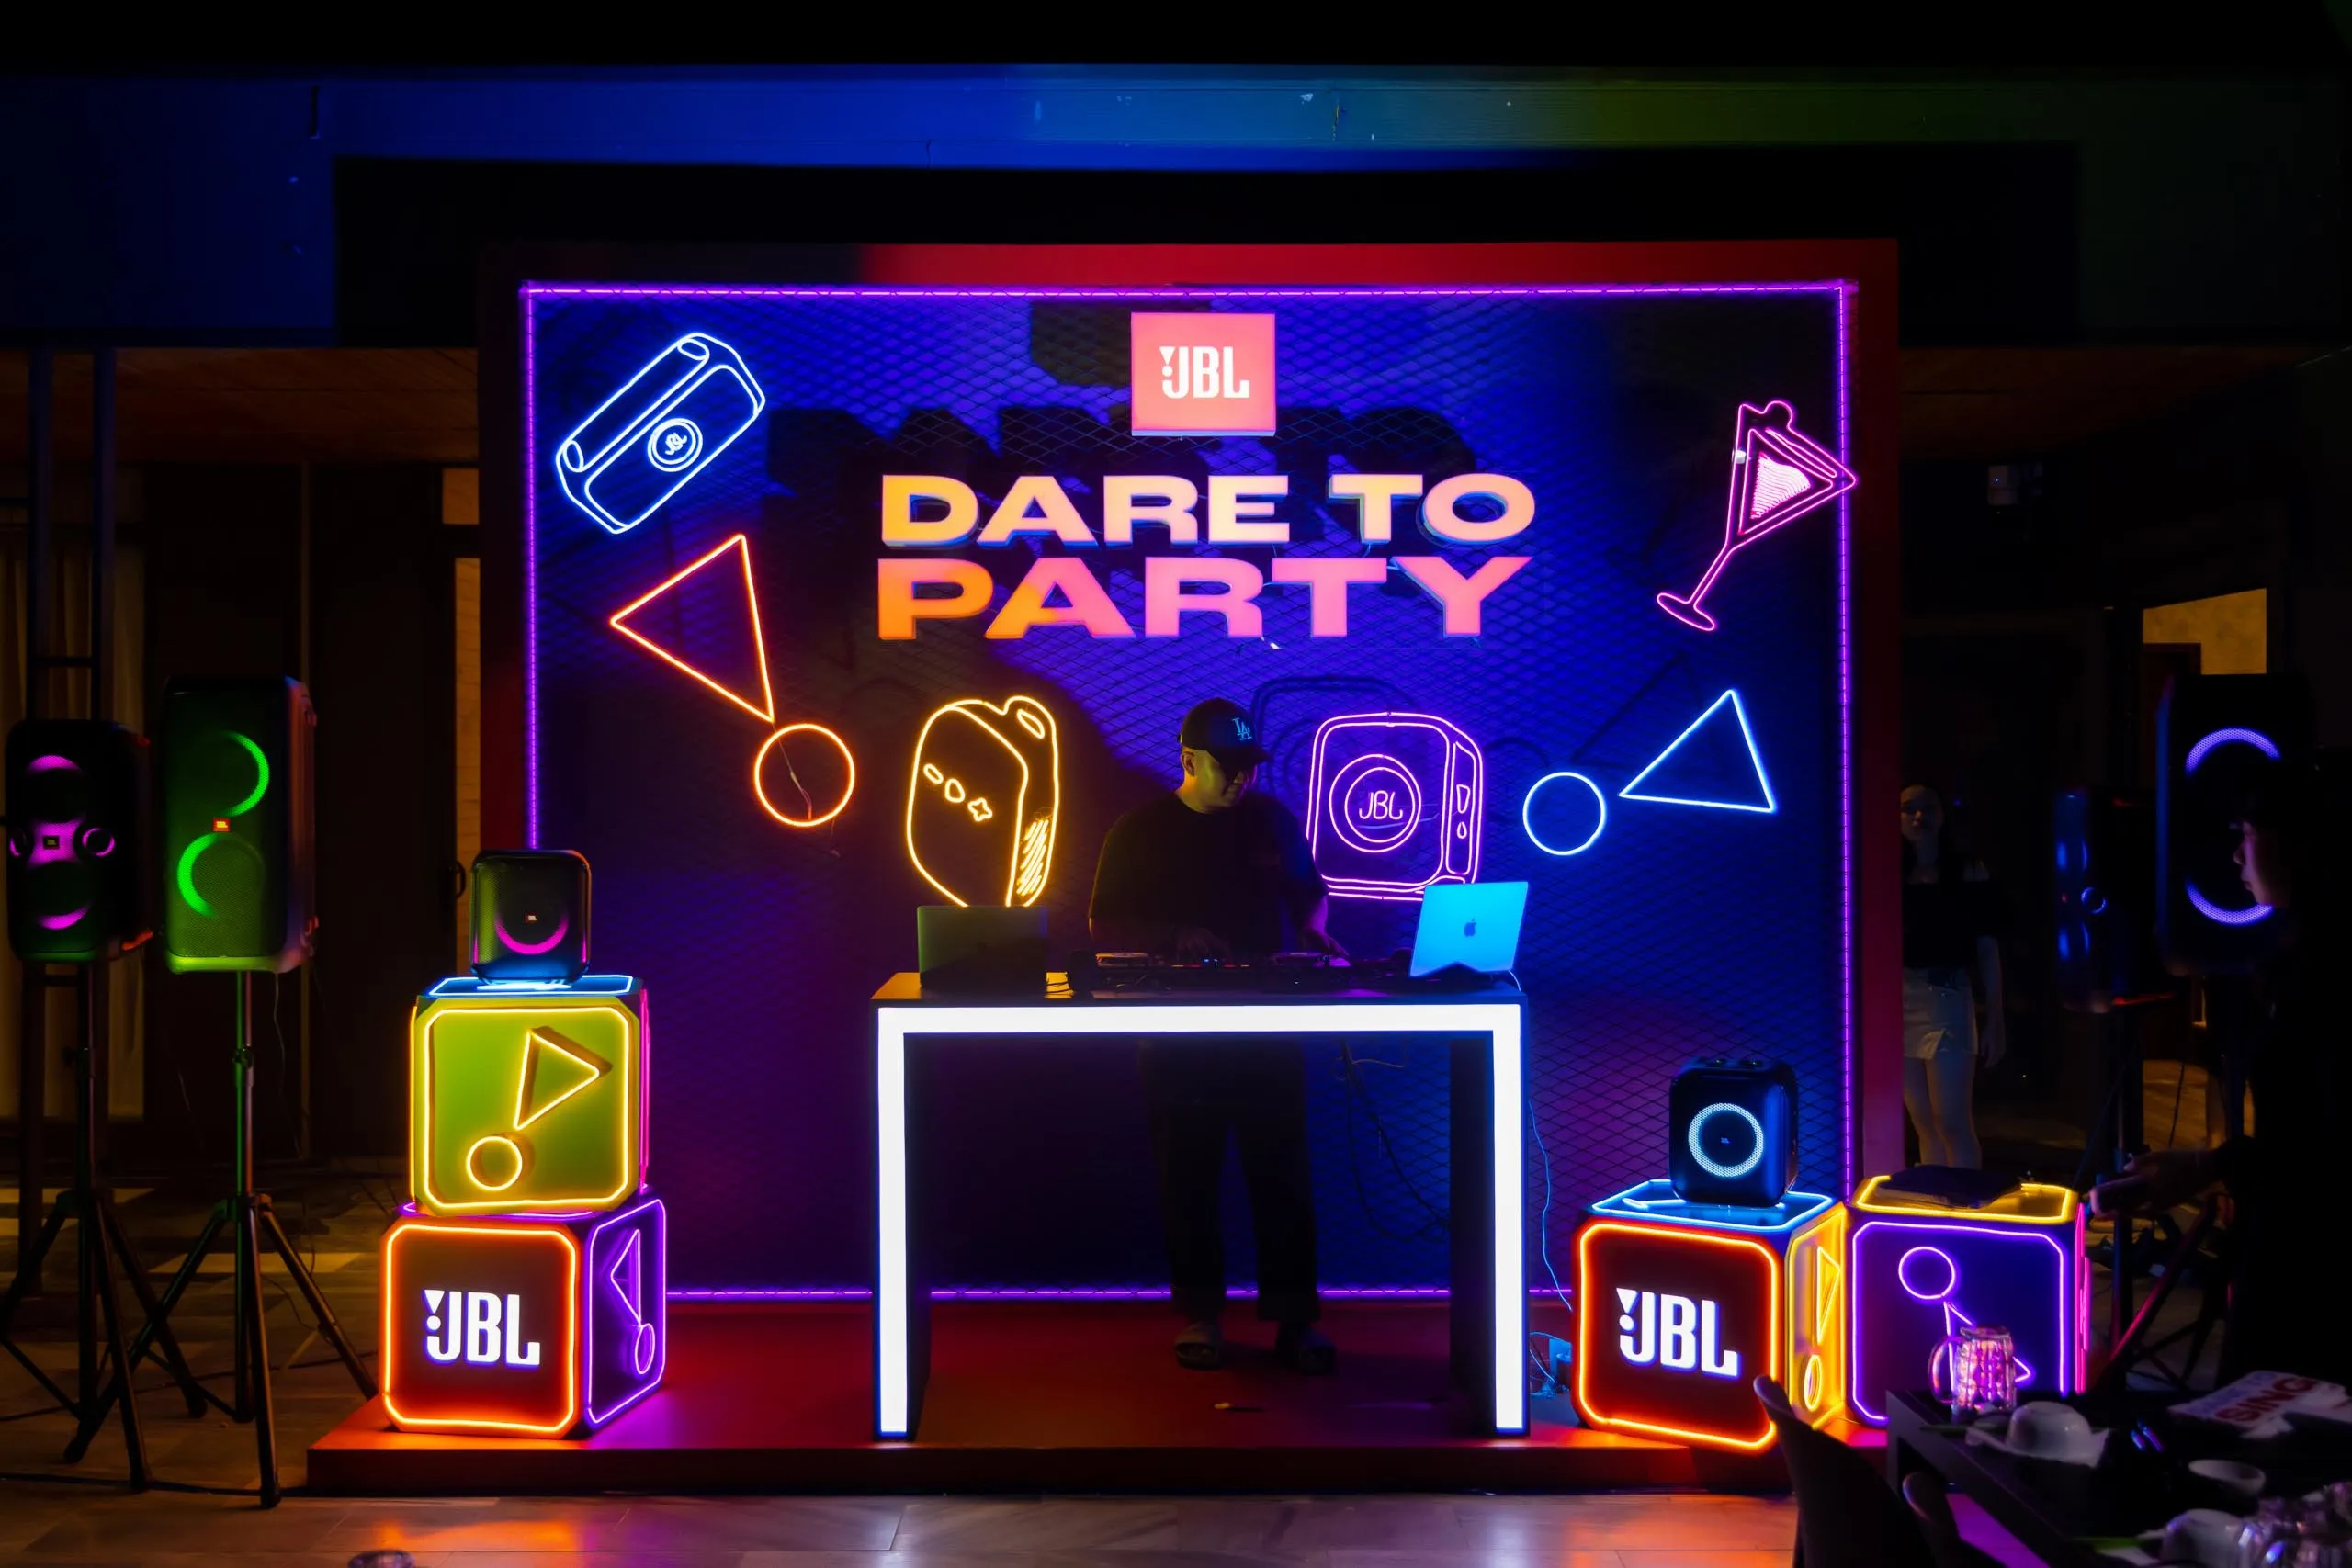 Bộ 3 loa tiệc JBL Partybox series giúp khuấy động mọi cuộc vui, hát hò như ca sĩ với âm thanh cực cuốn